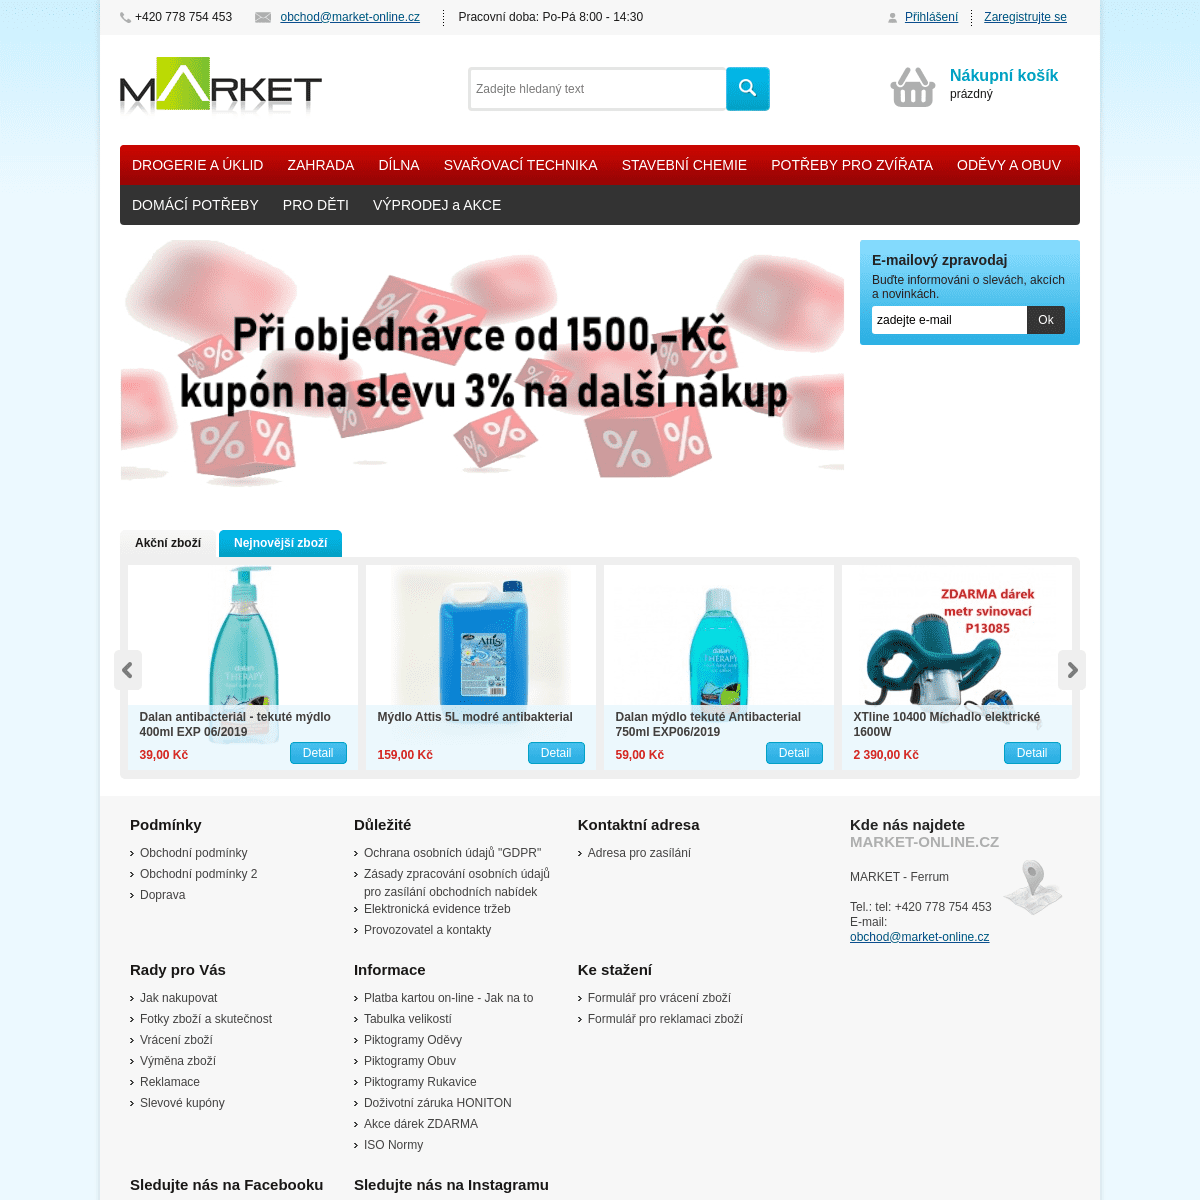 A complete backup of market-online.cz